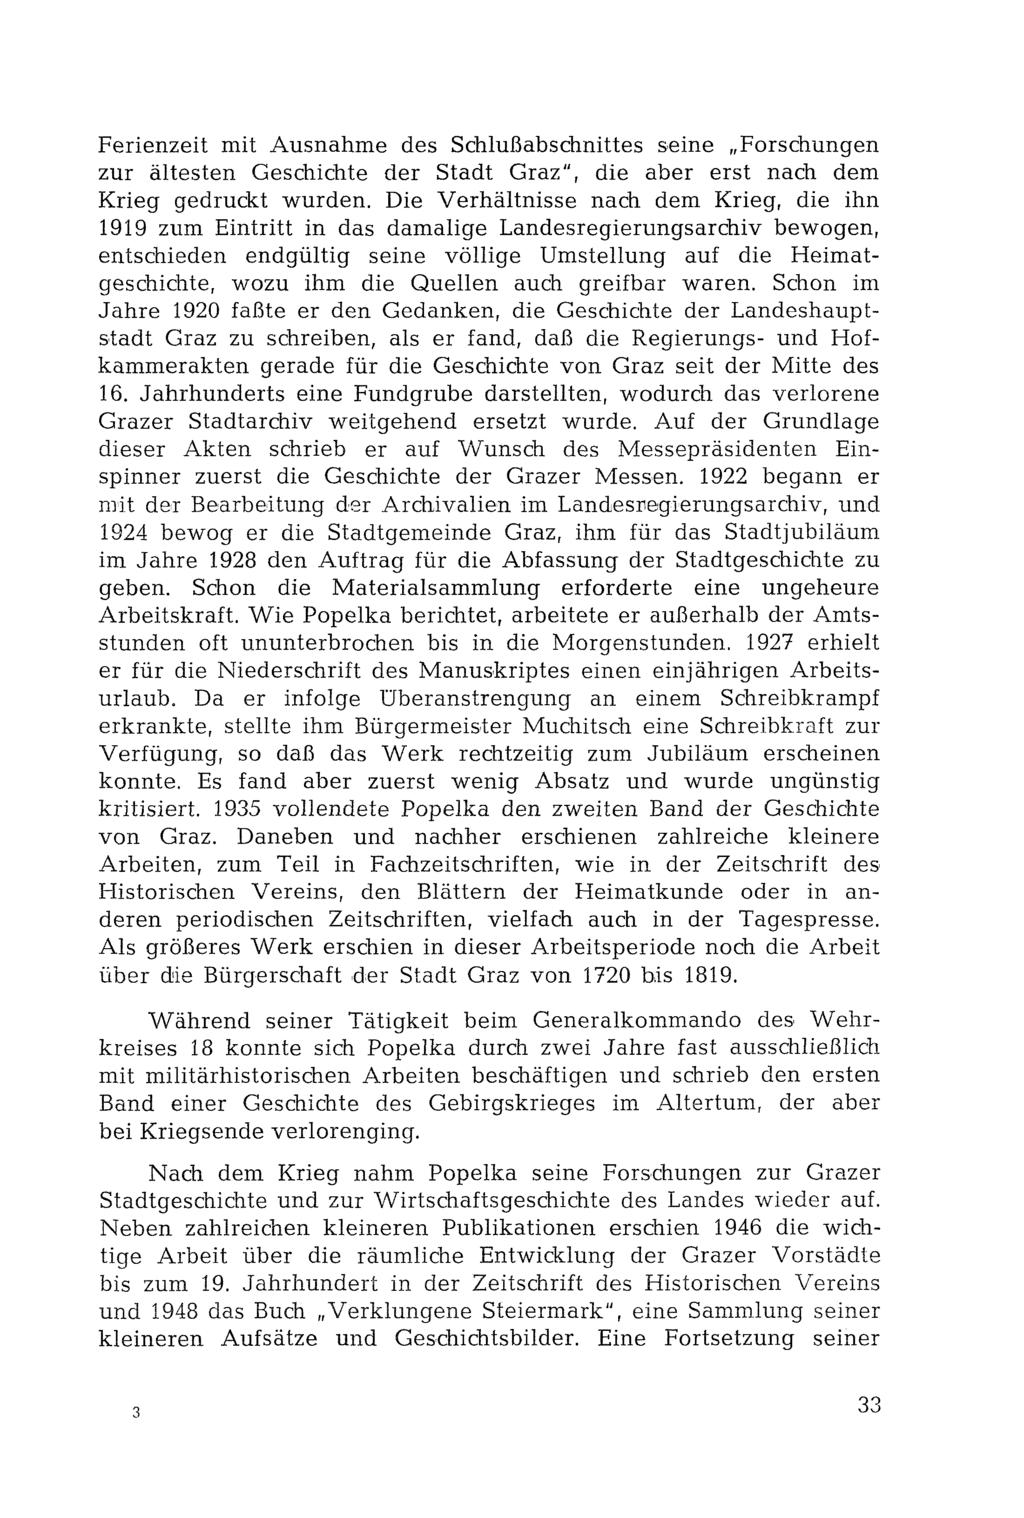 Ferienzeit mit Ausnahme des Schlußabschnittes seine Forschungen zur ältesten Geschichte der Stadt Graz", die aber erst nach dem Krieg gedruckt wurden.